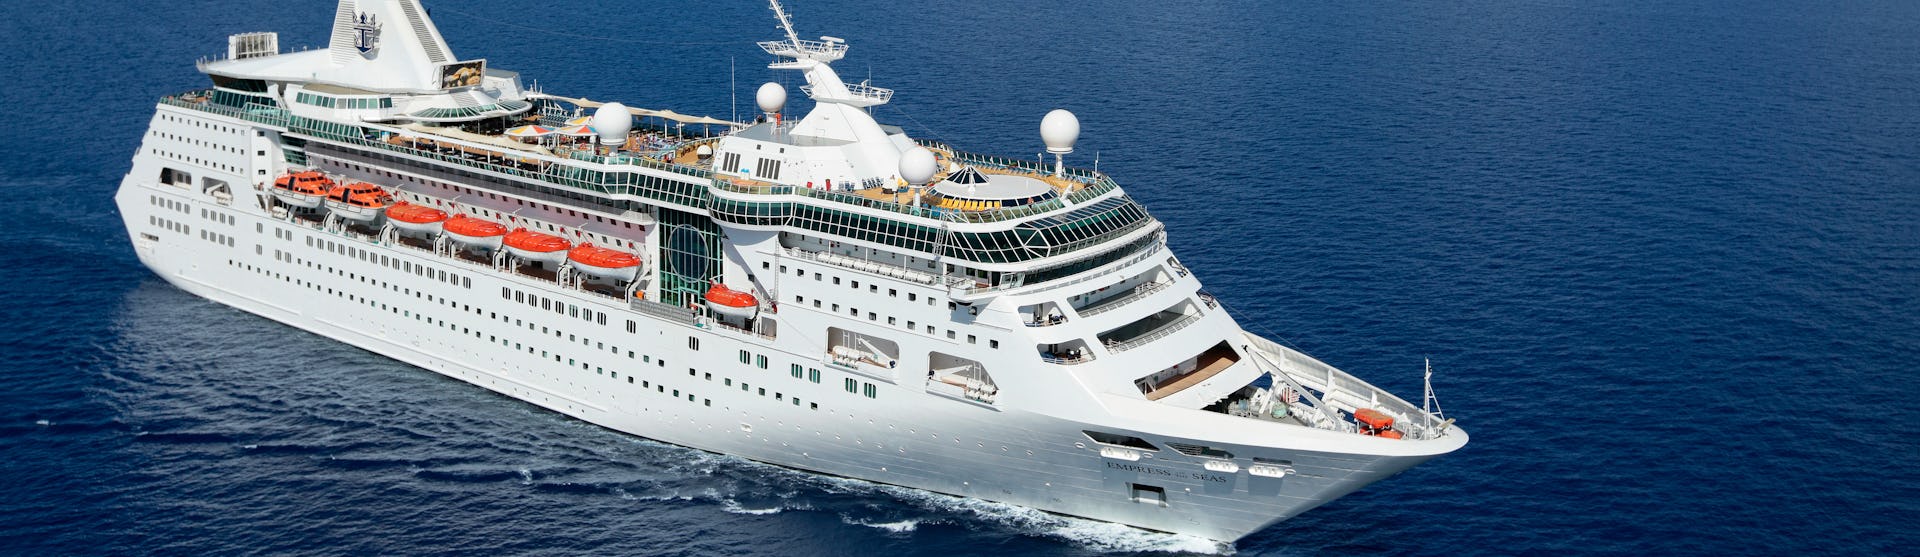 Bild snett från ovan på fartyget Empress of the Seas som kryssar sig fram i vattnet.